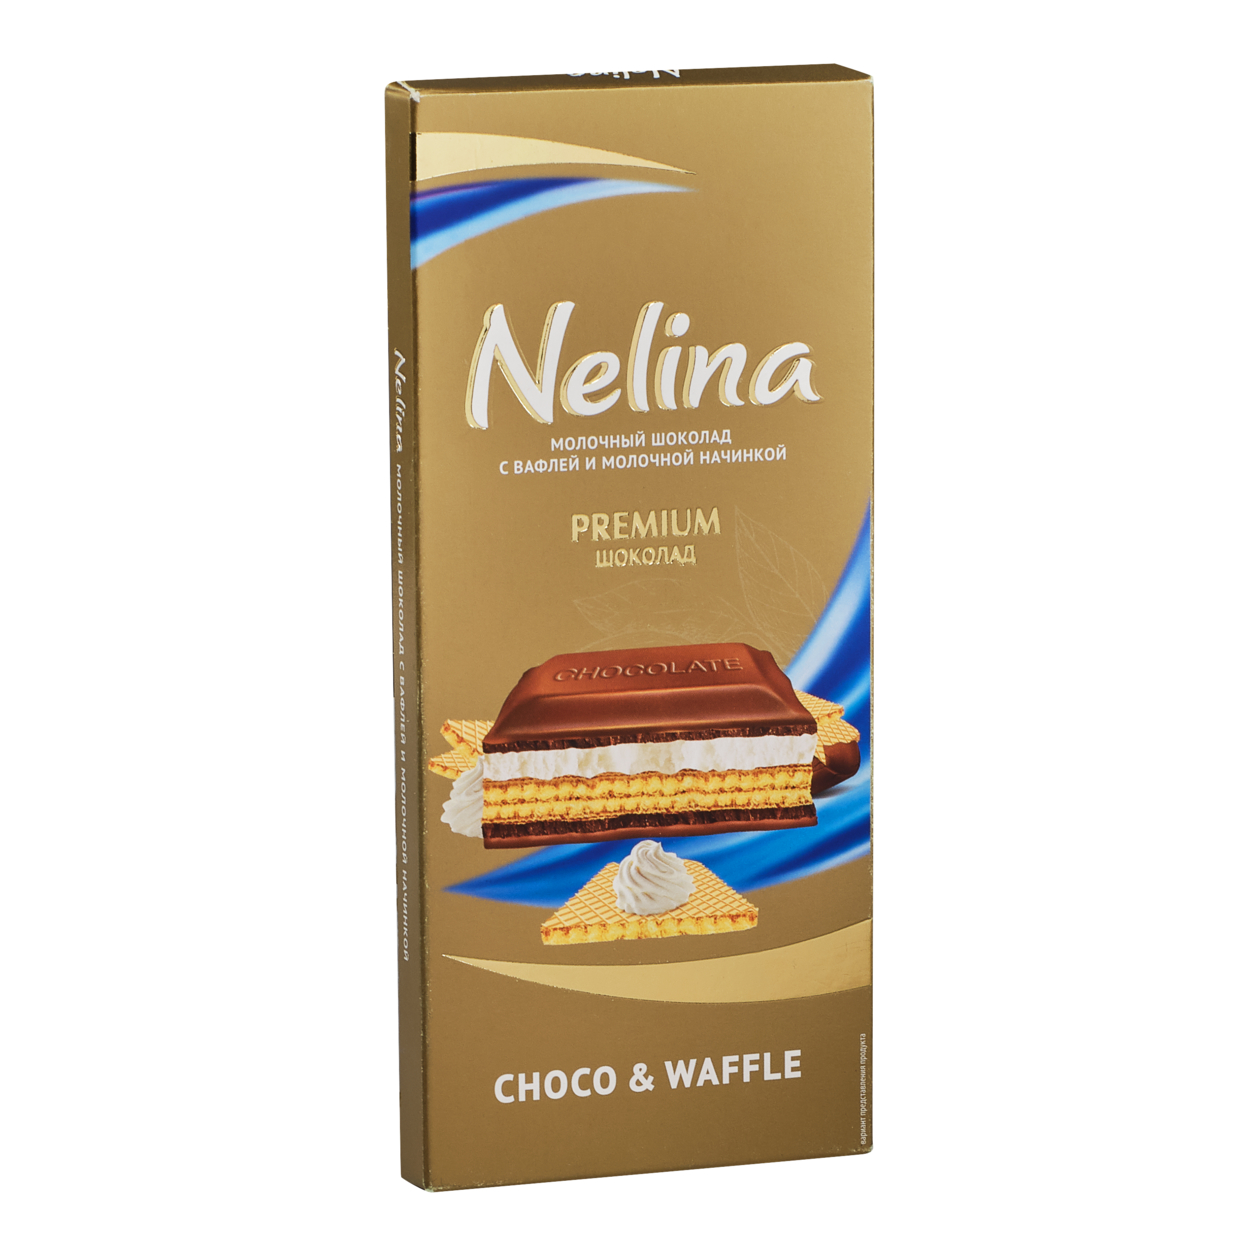 Nelina Молочный шоколад с вафлей и молочной начинкой, 80 г по акции в Пятерочке